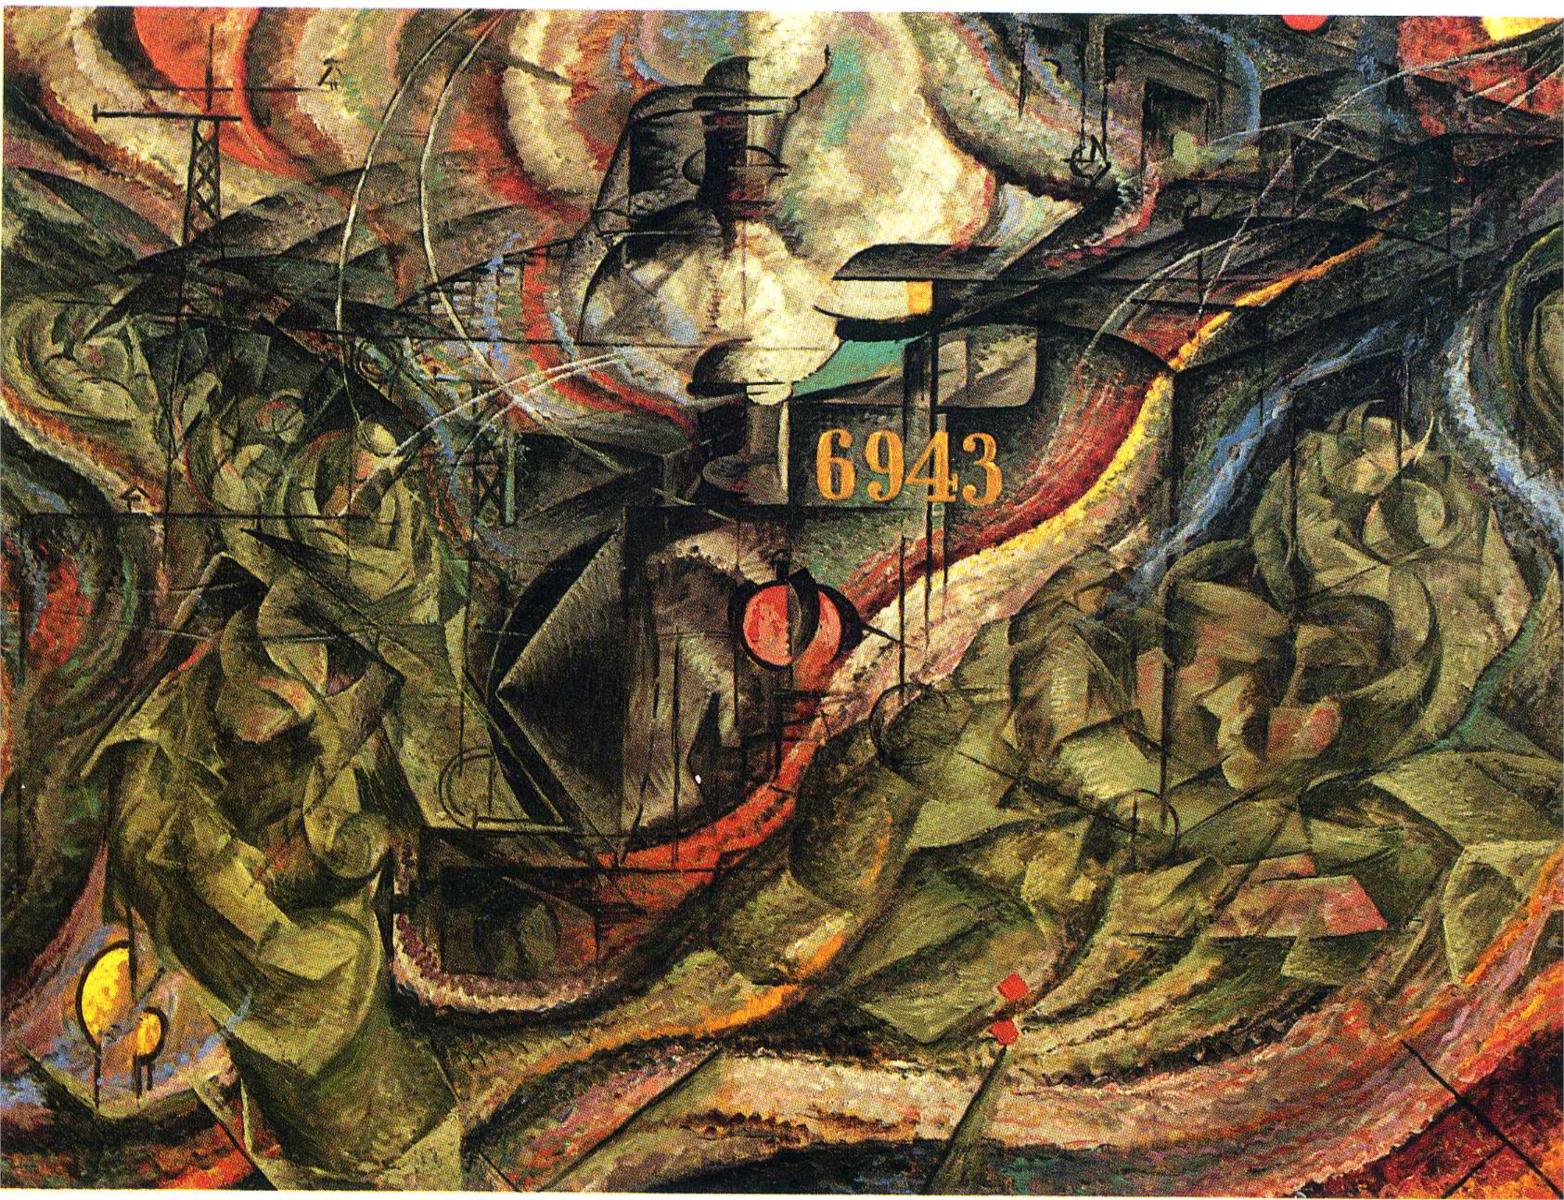 Состояние души l: Прощание. by Умберто Боччони - 1911 - 70.5 x 96.2 cm 